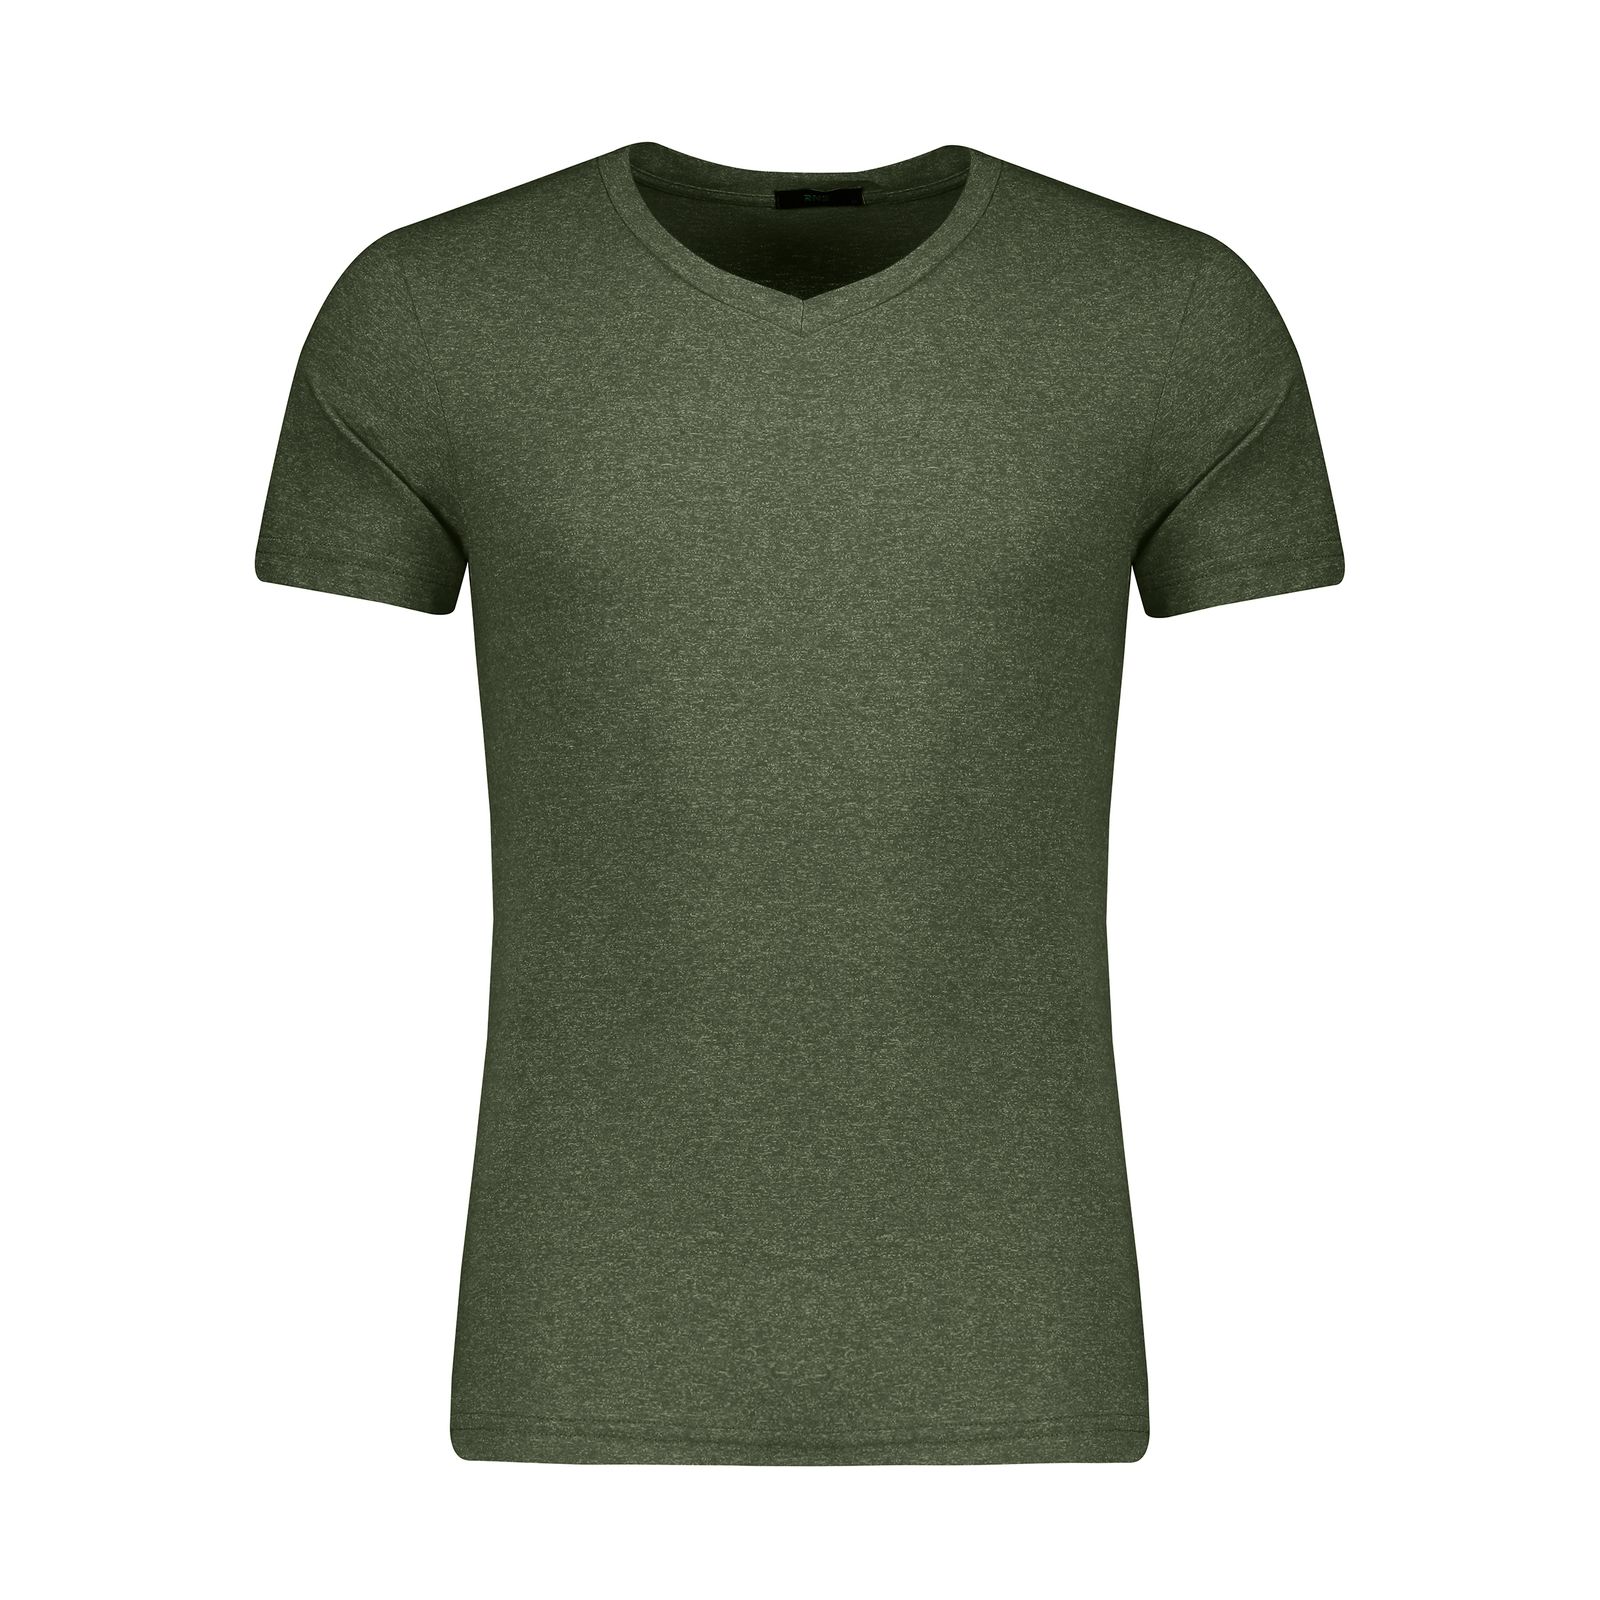 تی شرت ورزشی مردانه آر اِن اِس مدل 12021265-78